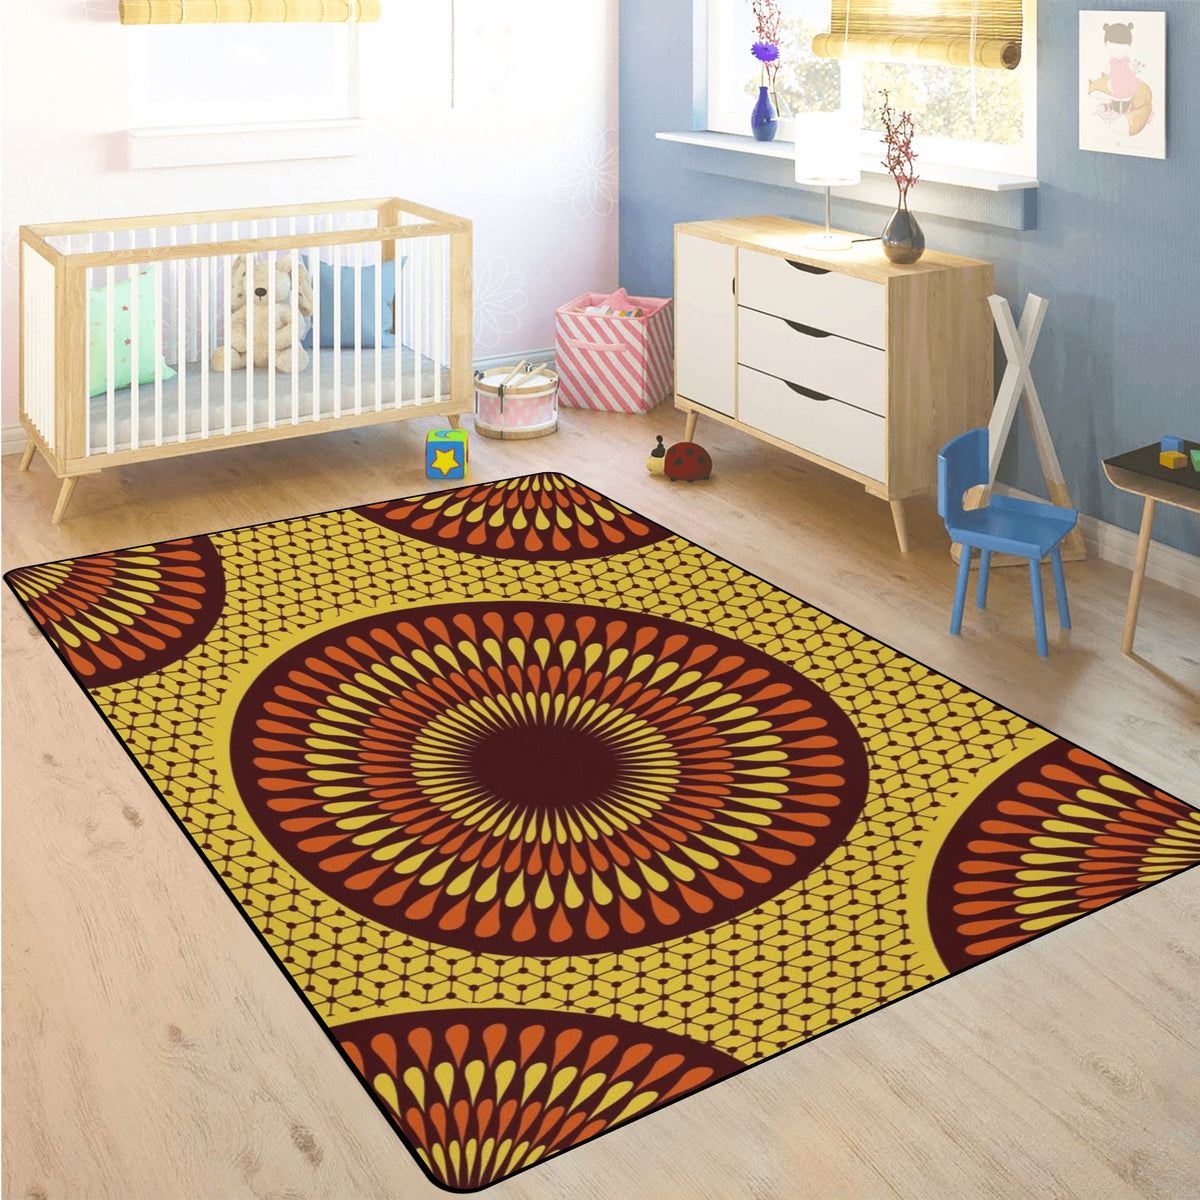 Living Room Carpet Rug in African Ankara Prints Pop